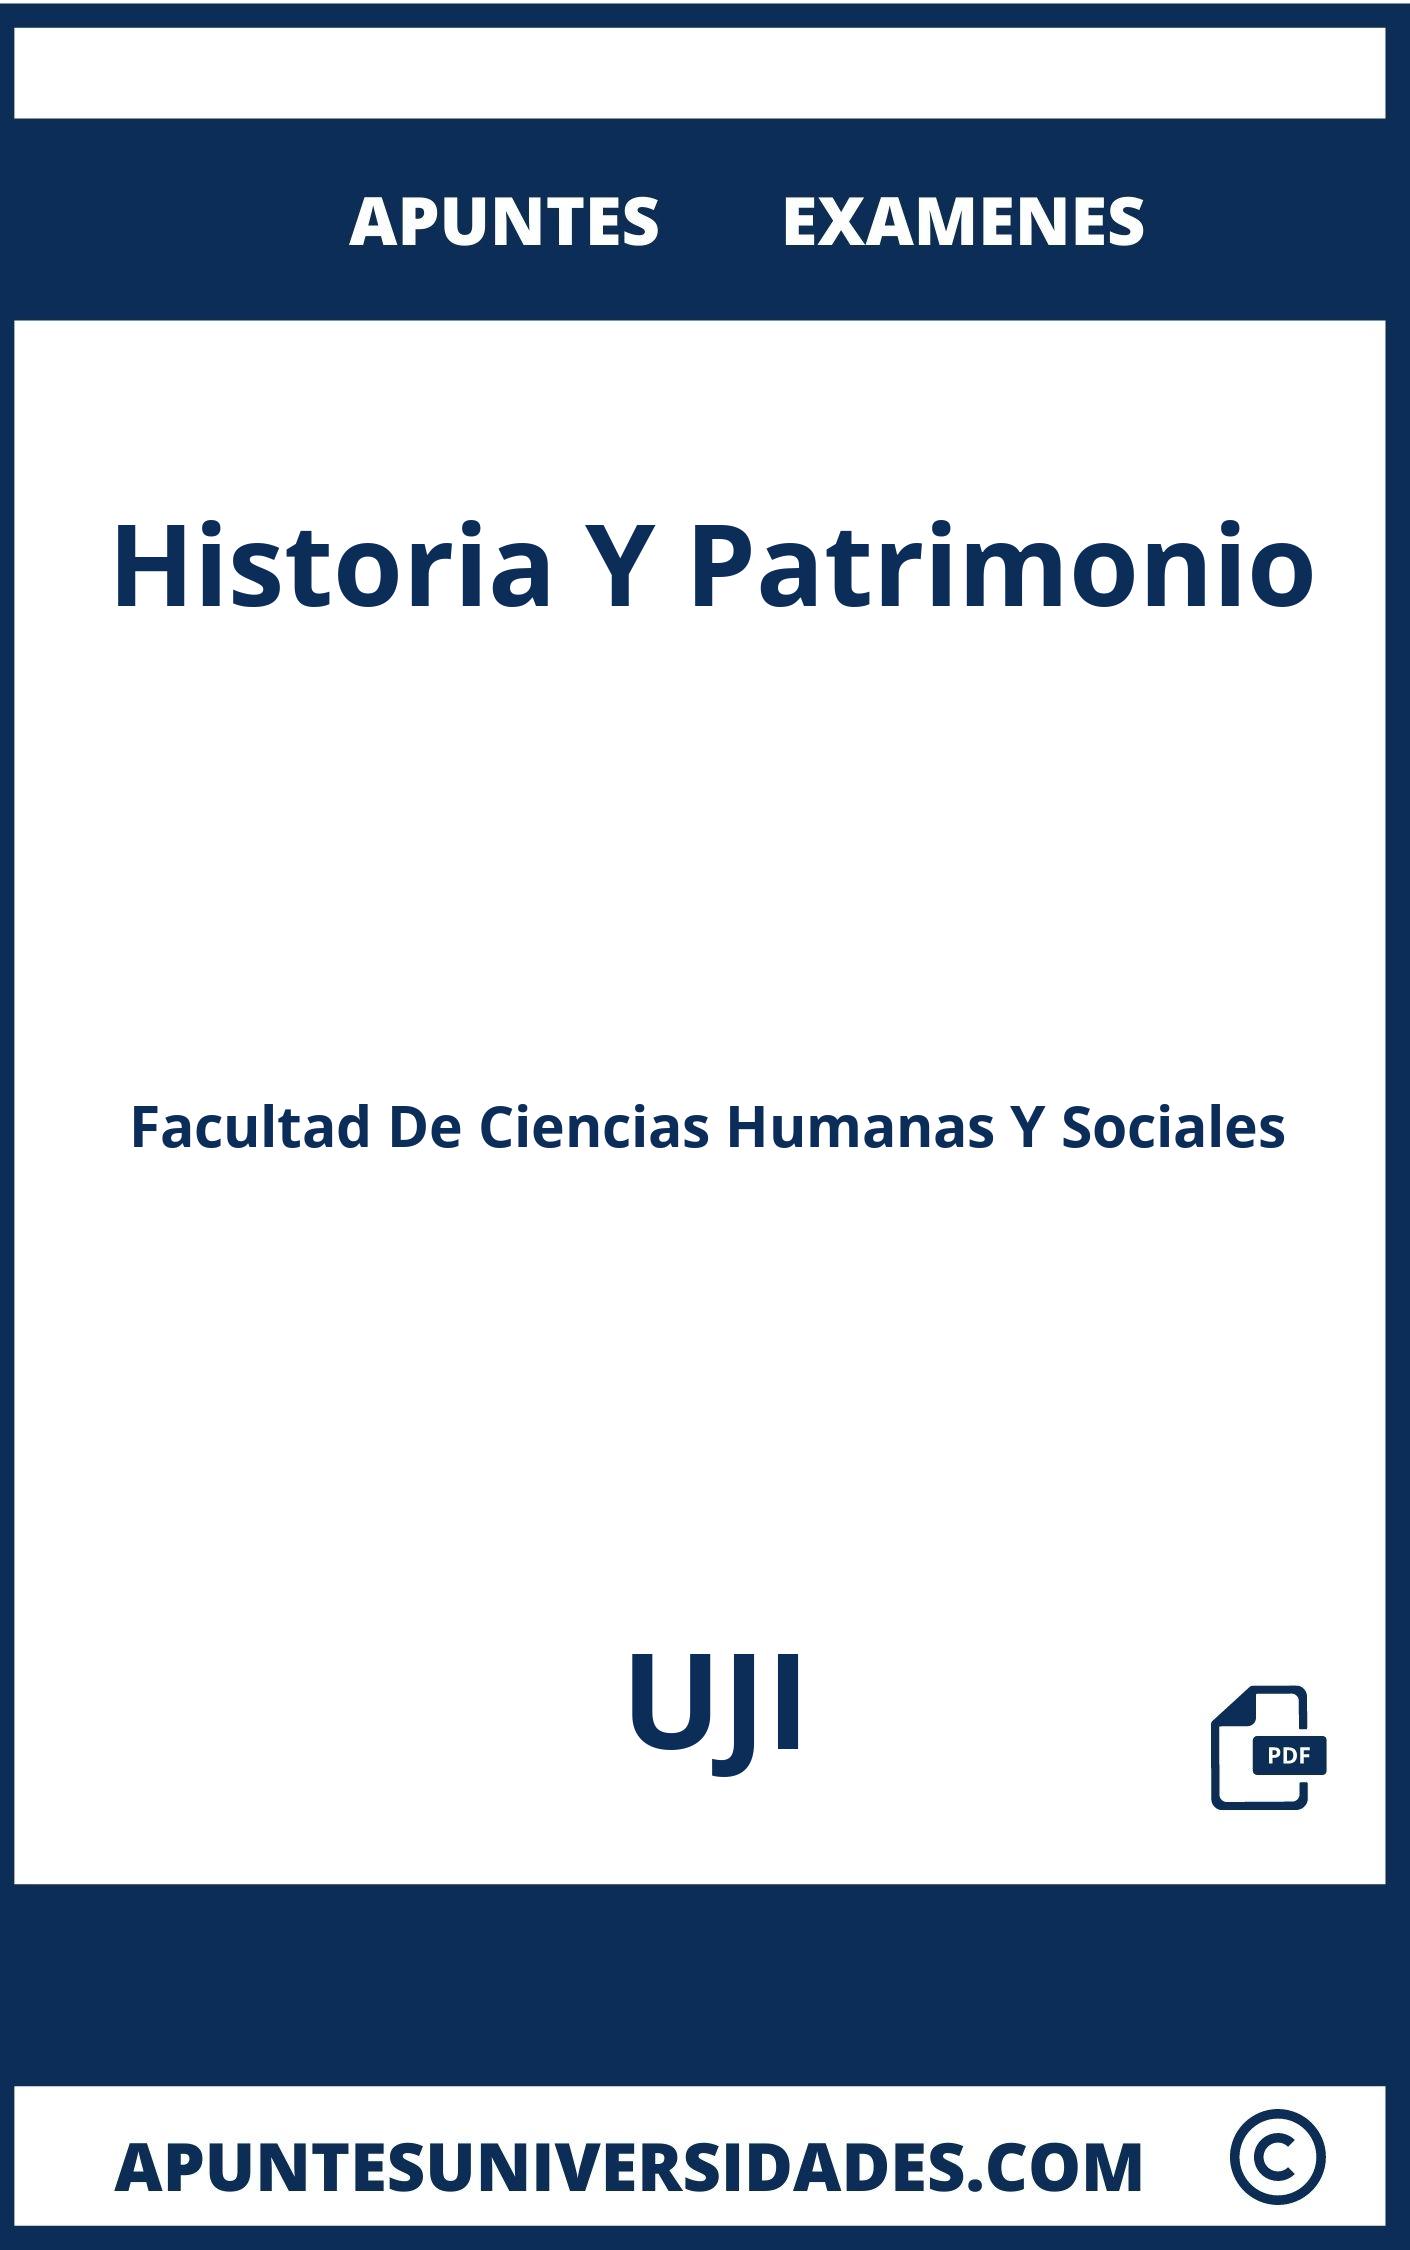 Apuntes y Examenes Historia Y Patrimonio UJI